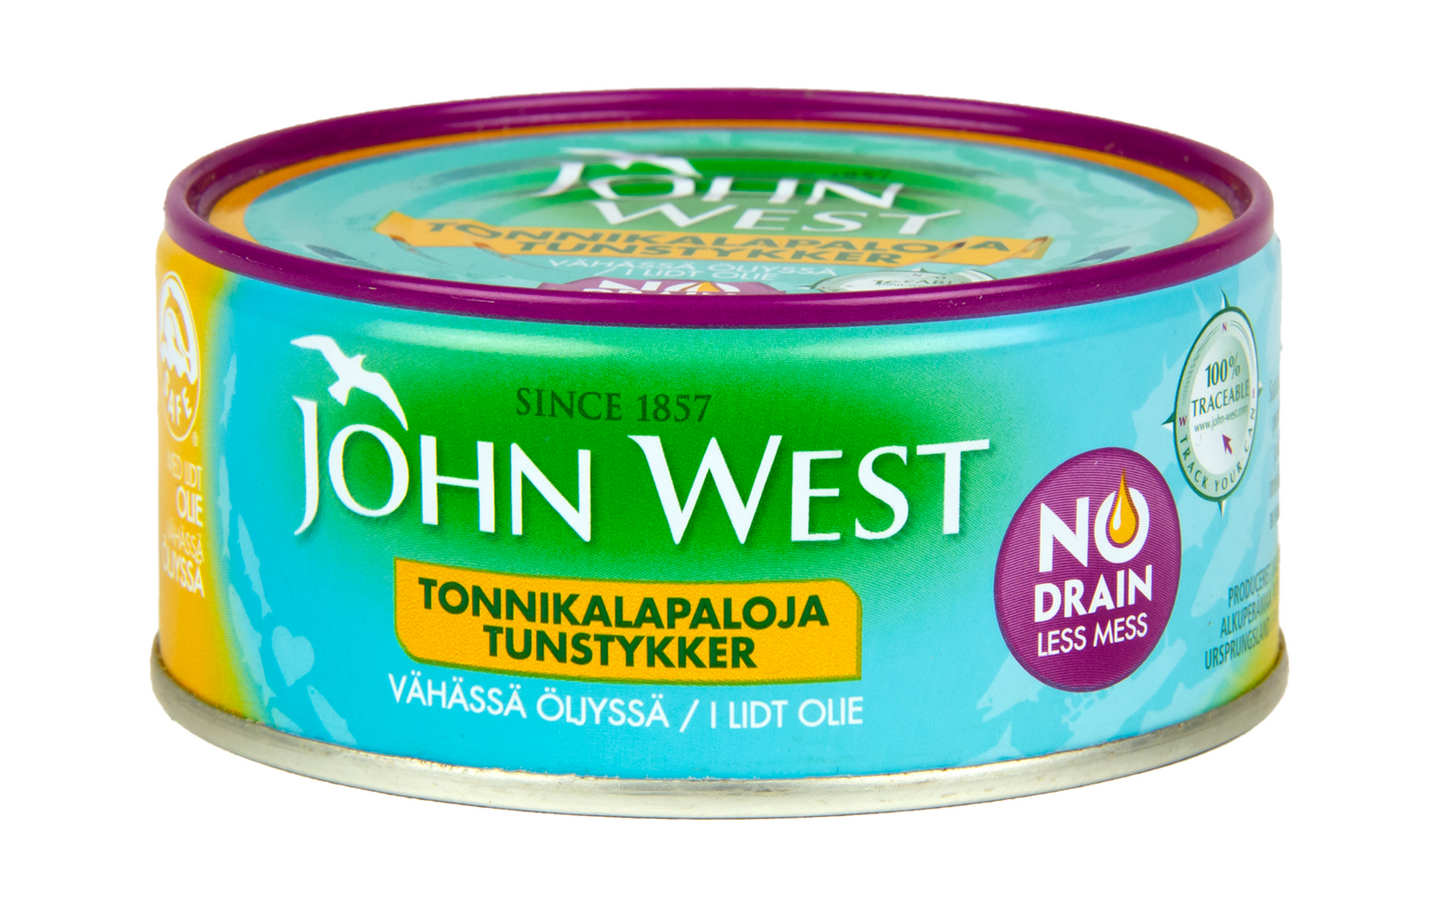 John West meheviä valutettuja tonnikalapaloja vähässä öljyssä 120g